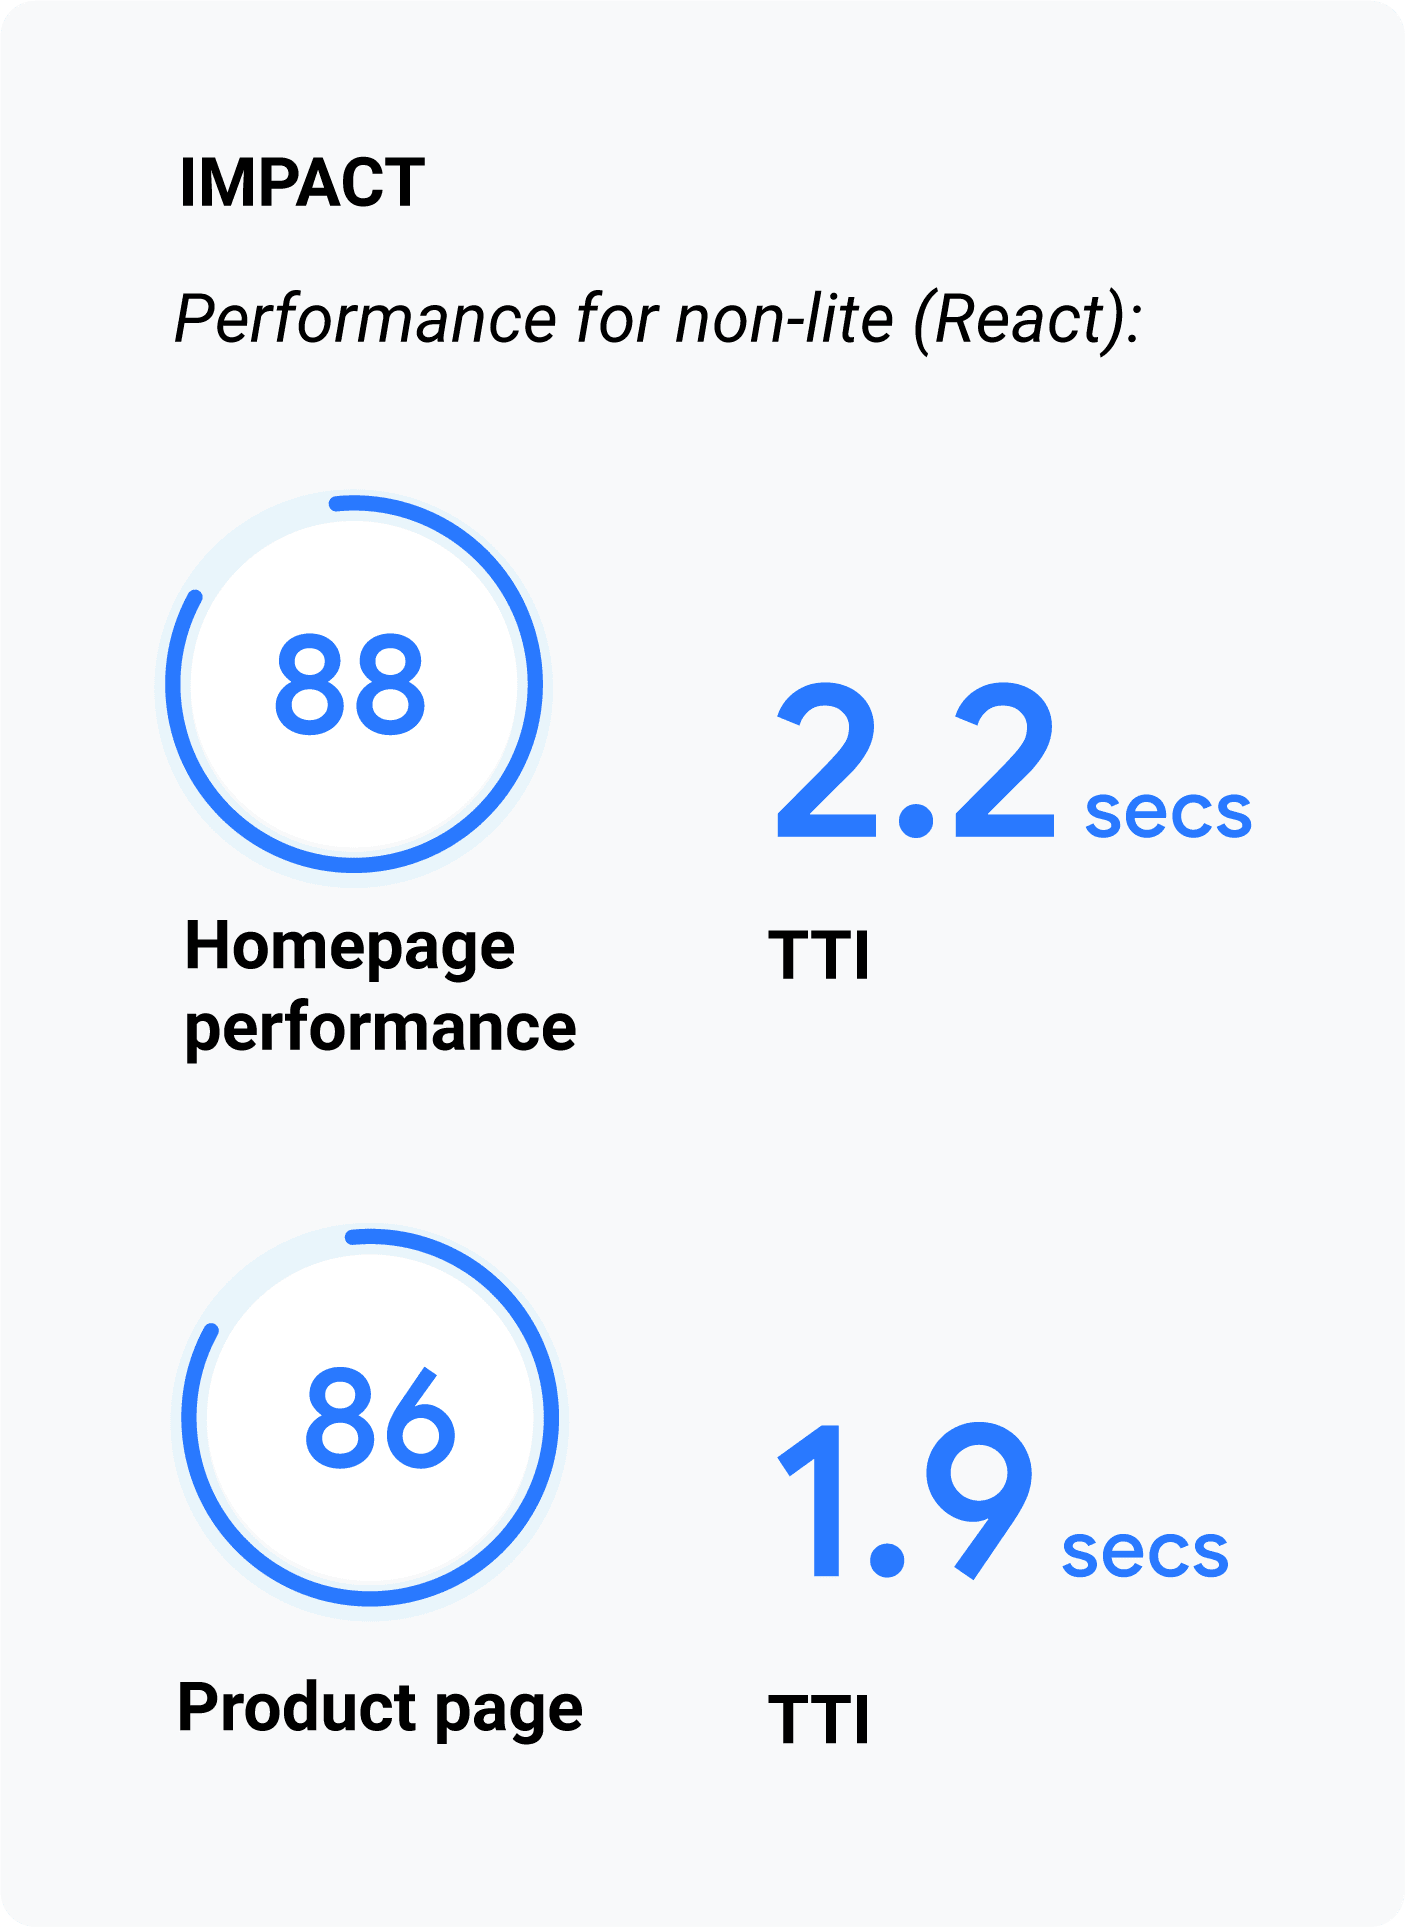 首页上的 TTI 得分为 2.2 秒（Lighthouse 得分：88）。产品页面上的 TTI 分数为 1.9 秒（Lighthouse 得分：86）。